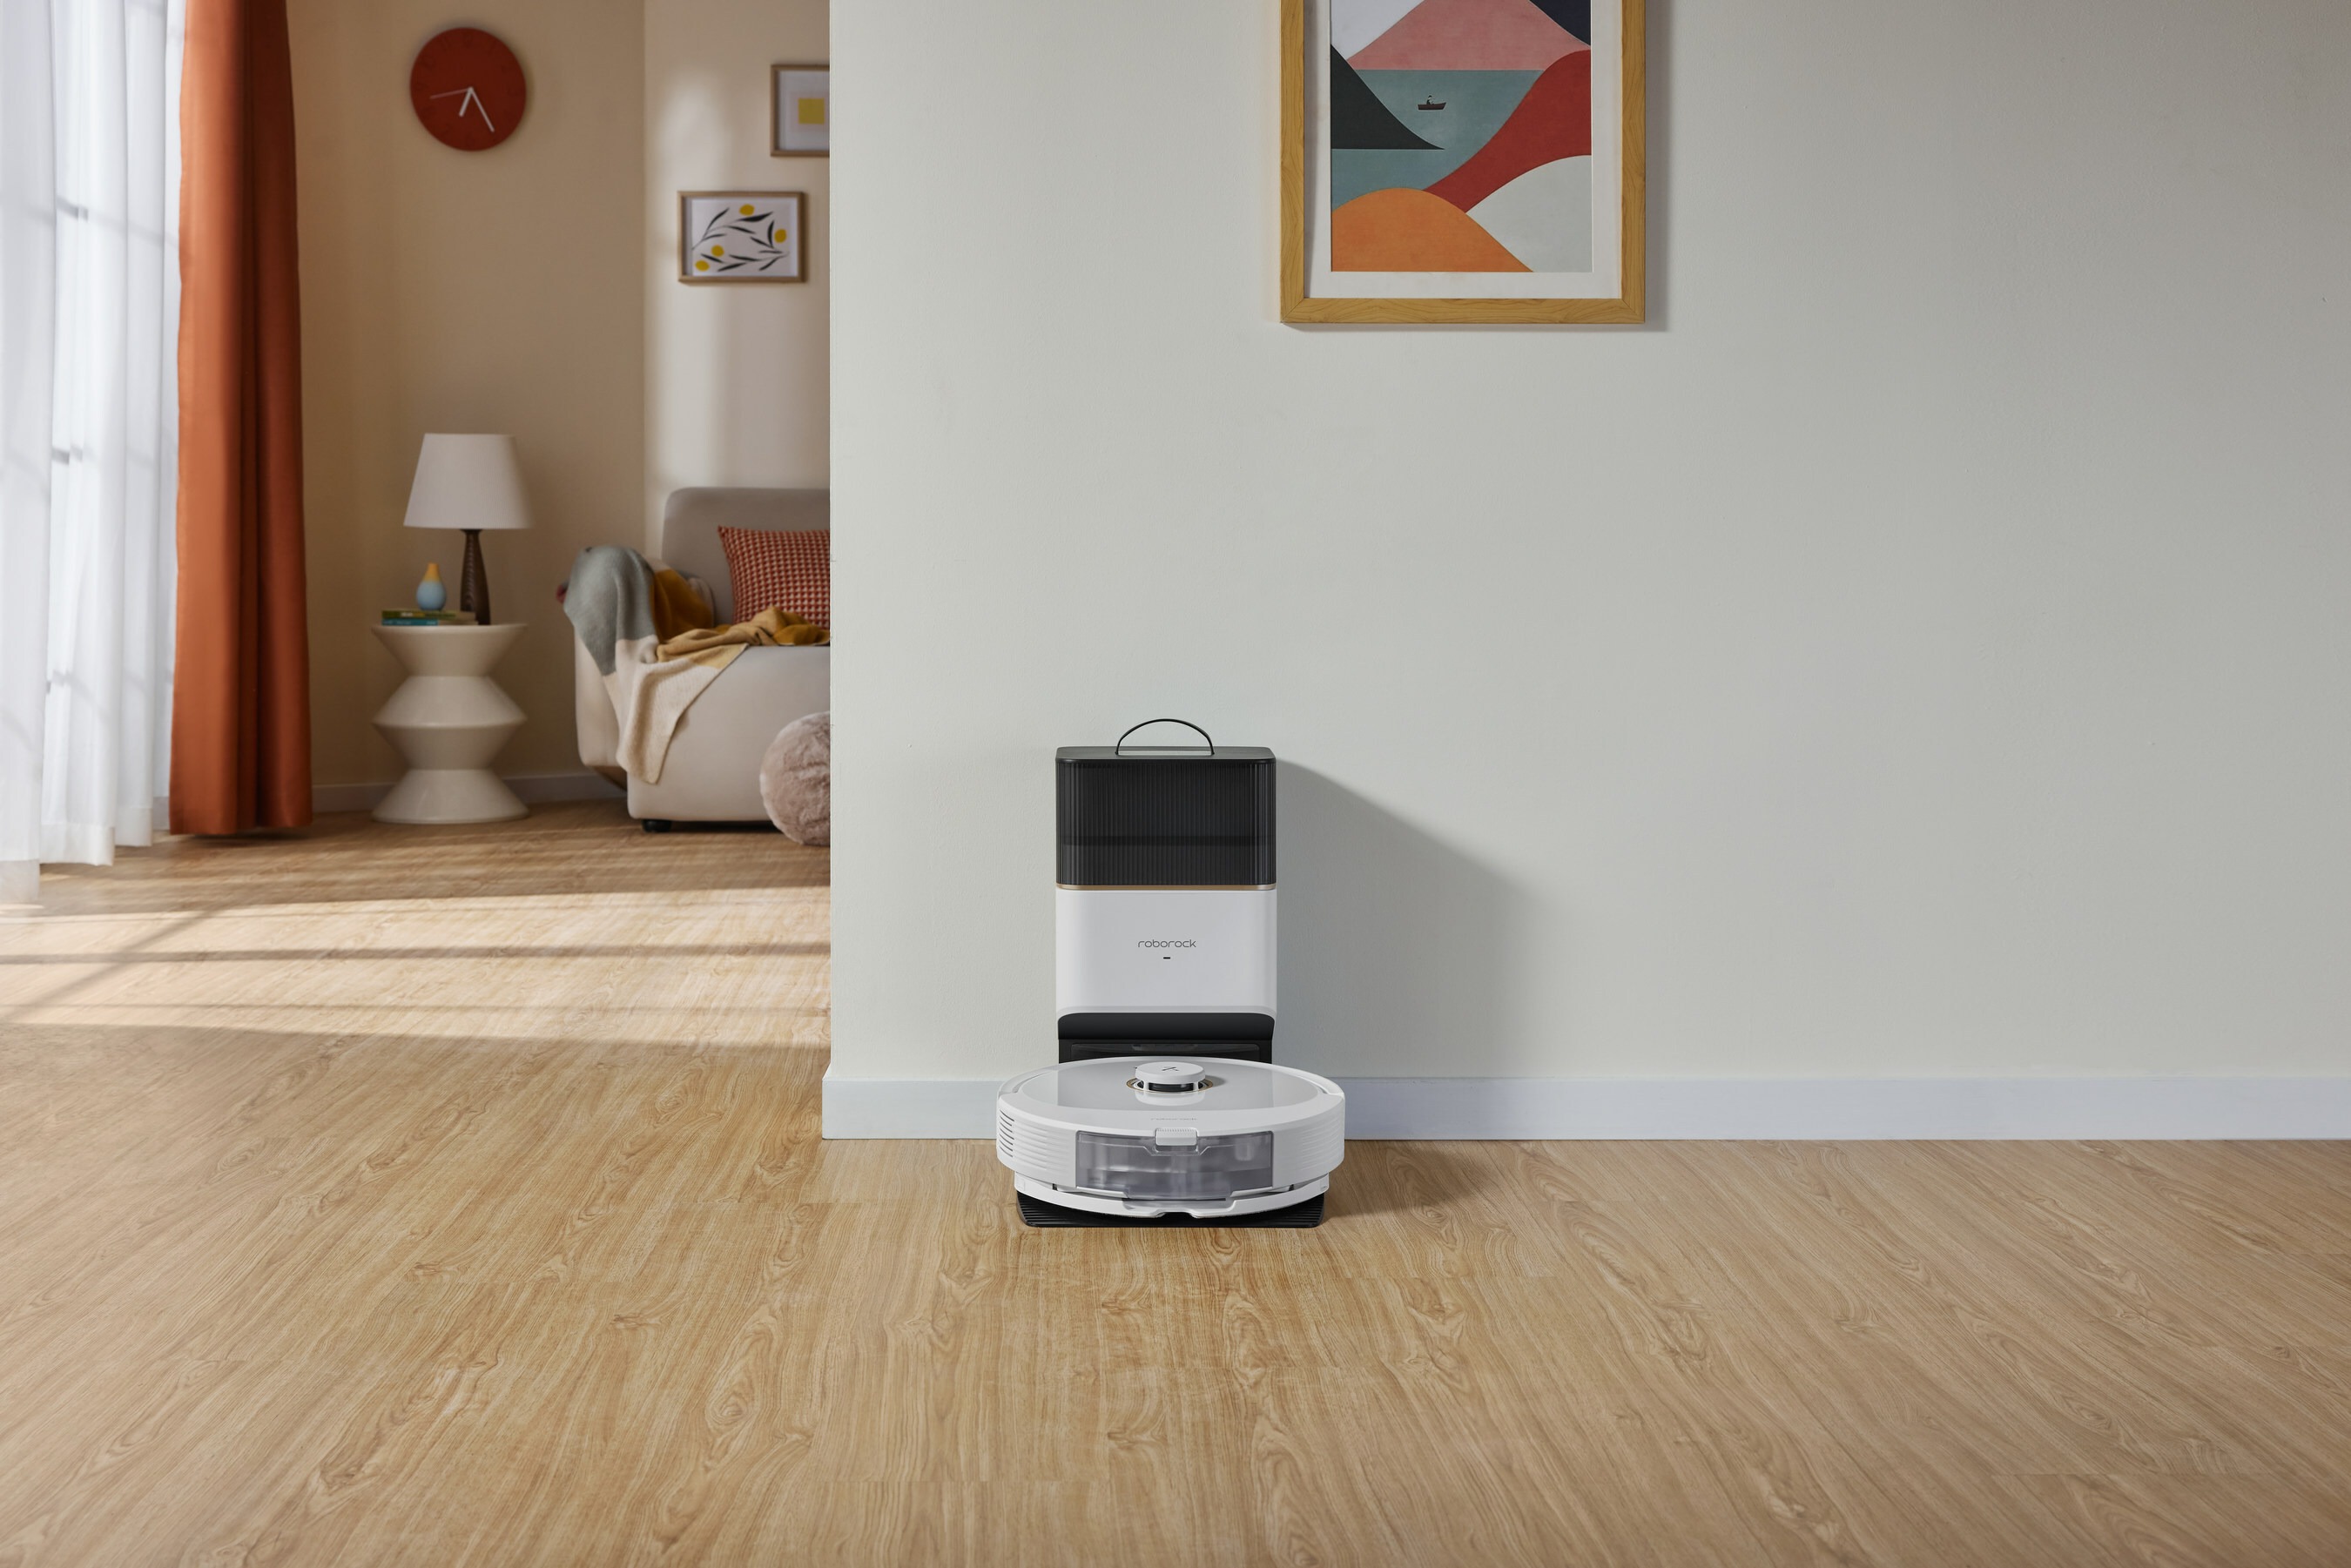 Roborock debuts new Q5 Pro & Q8 Max Robot Vacuums, with new Dyad